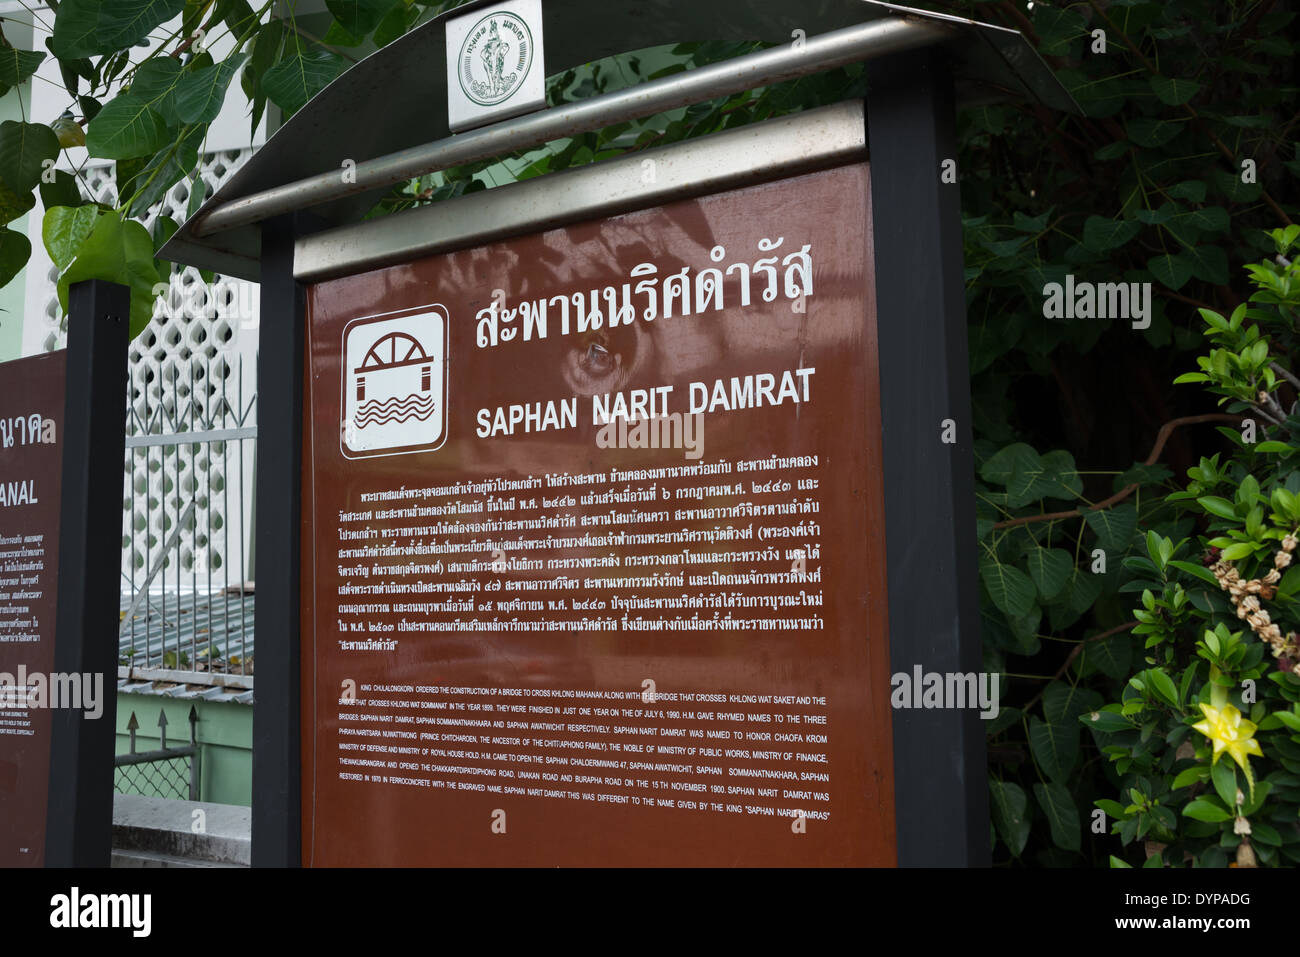 Un puente firme, señal marrón, escrito en inglés y tailandés. Señal de información turística. Bangkok, Tailandia. Foto de stock